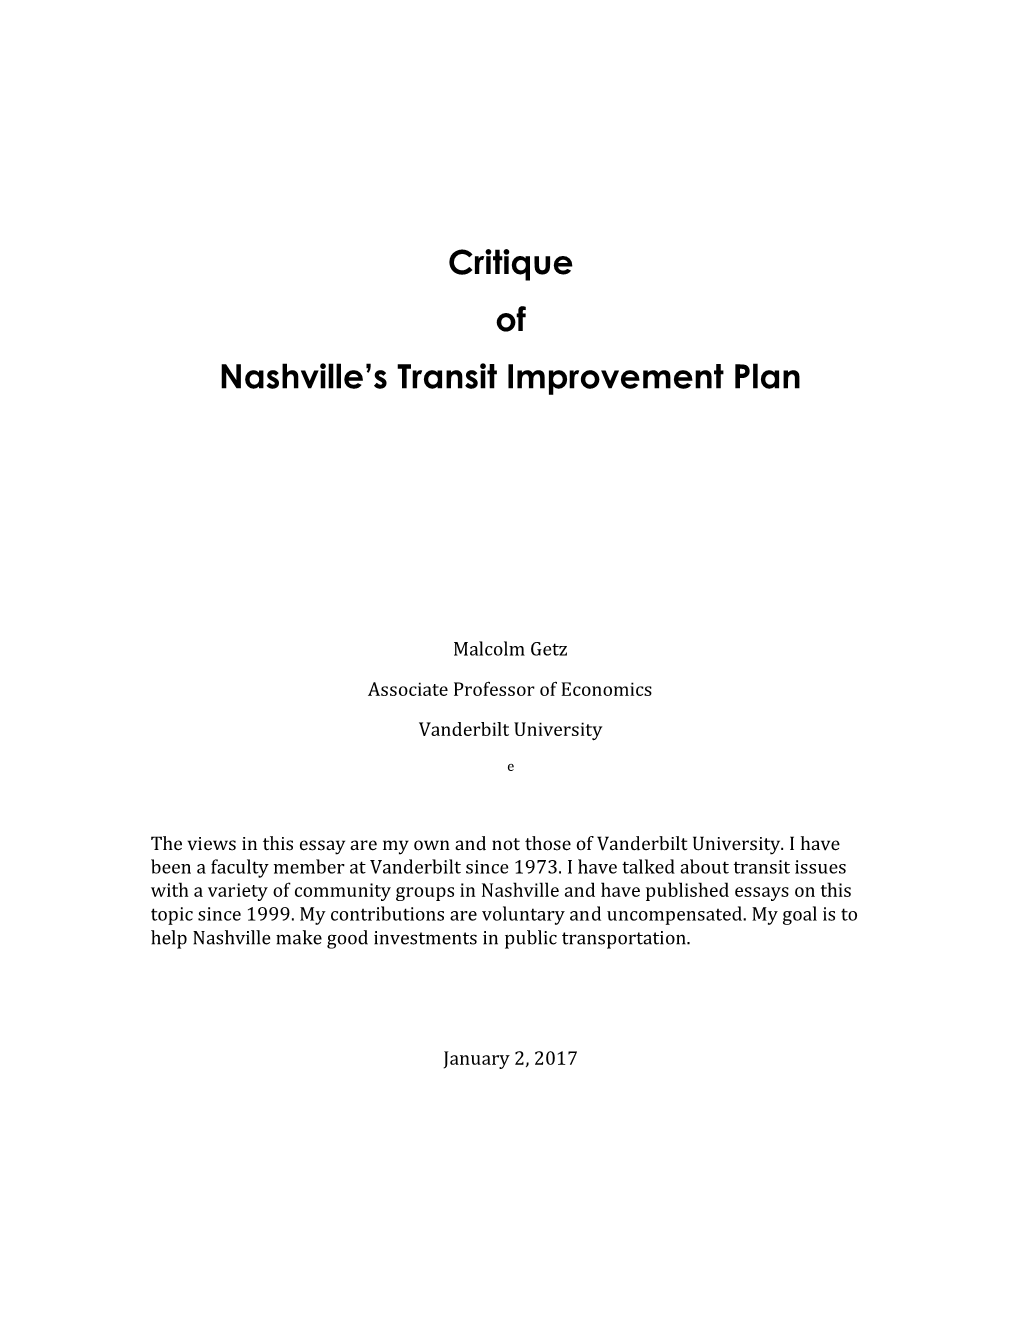 Critique of Nashville's Transit Improvement Plan